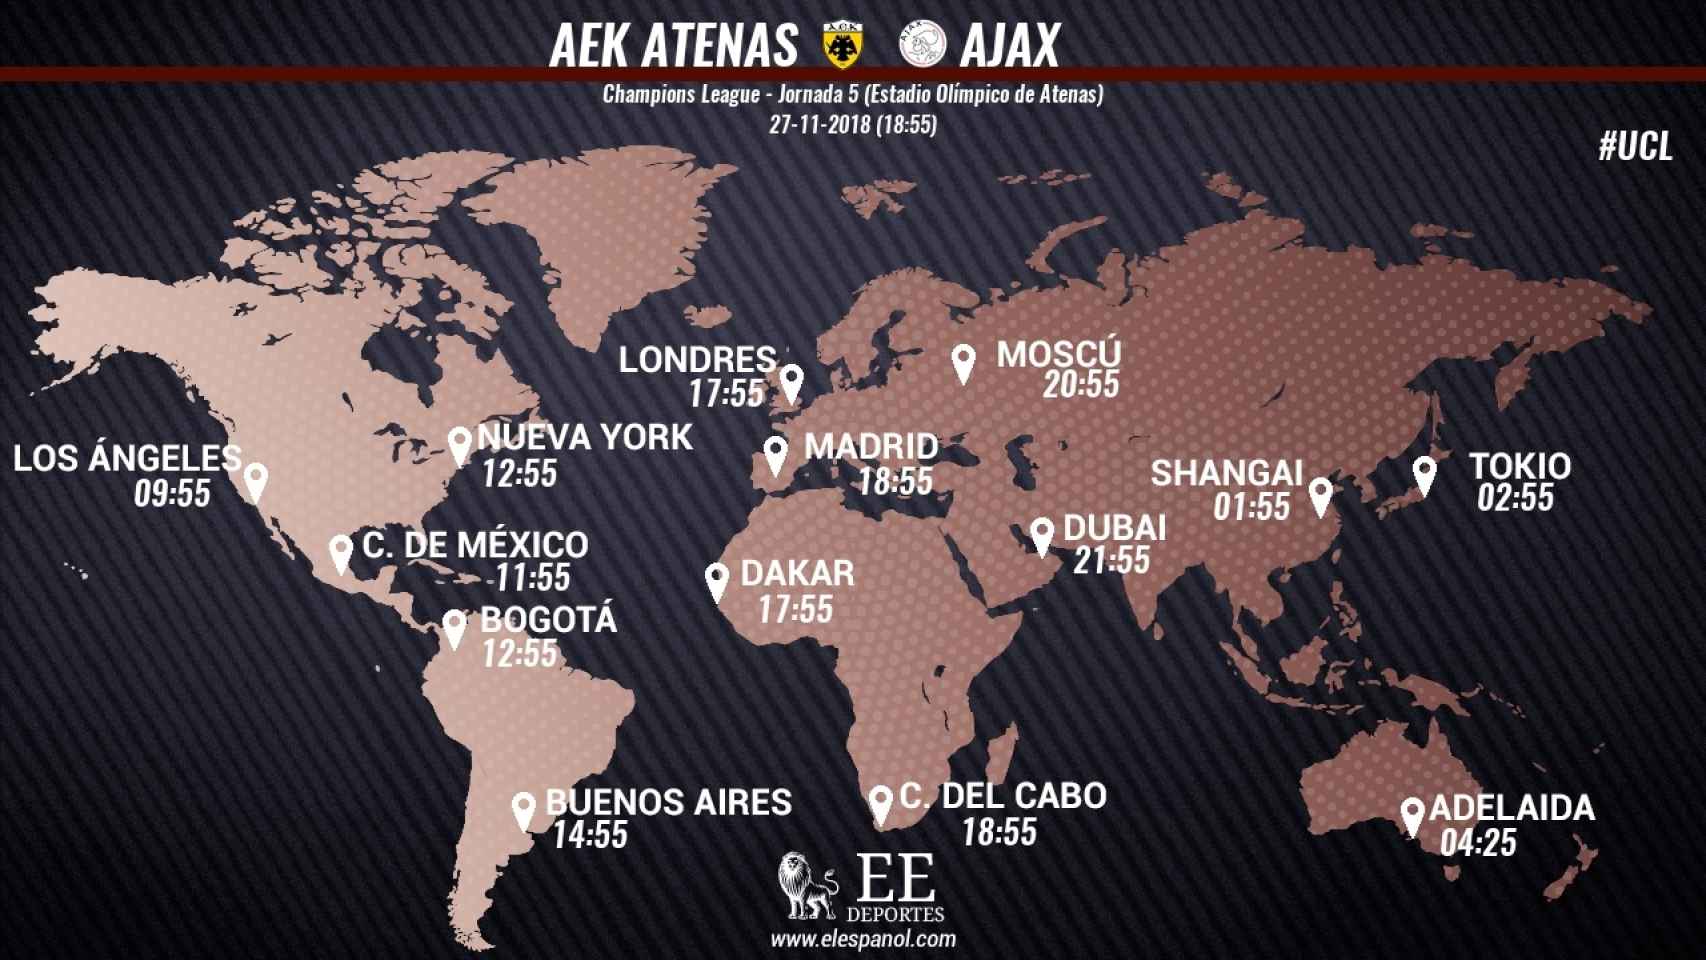 Horario del AEK Atenas - Ajax